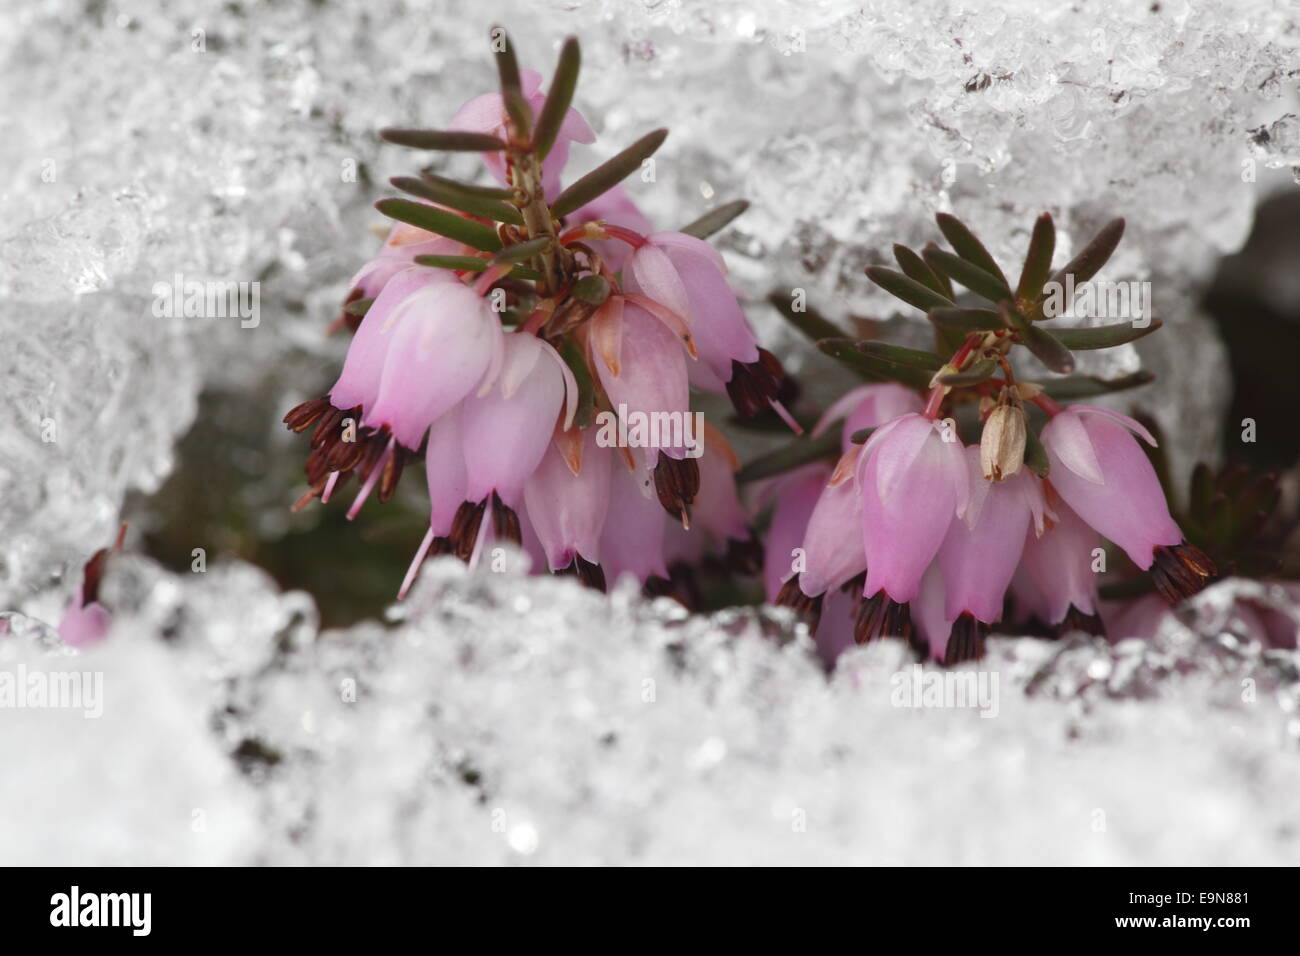 La molla heath nella neve Foto Stock